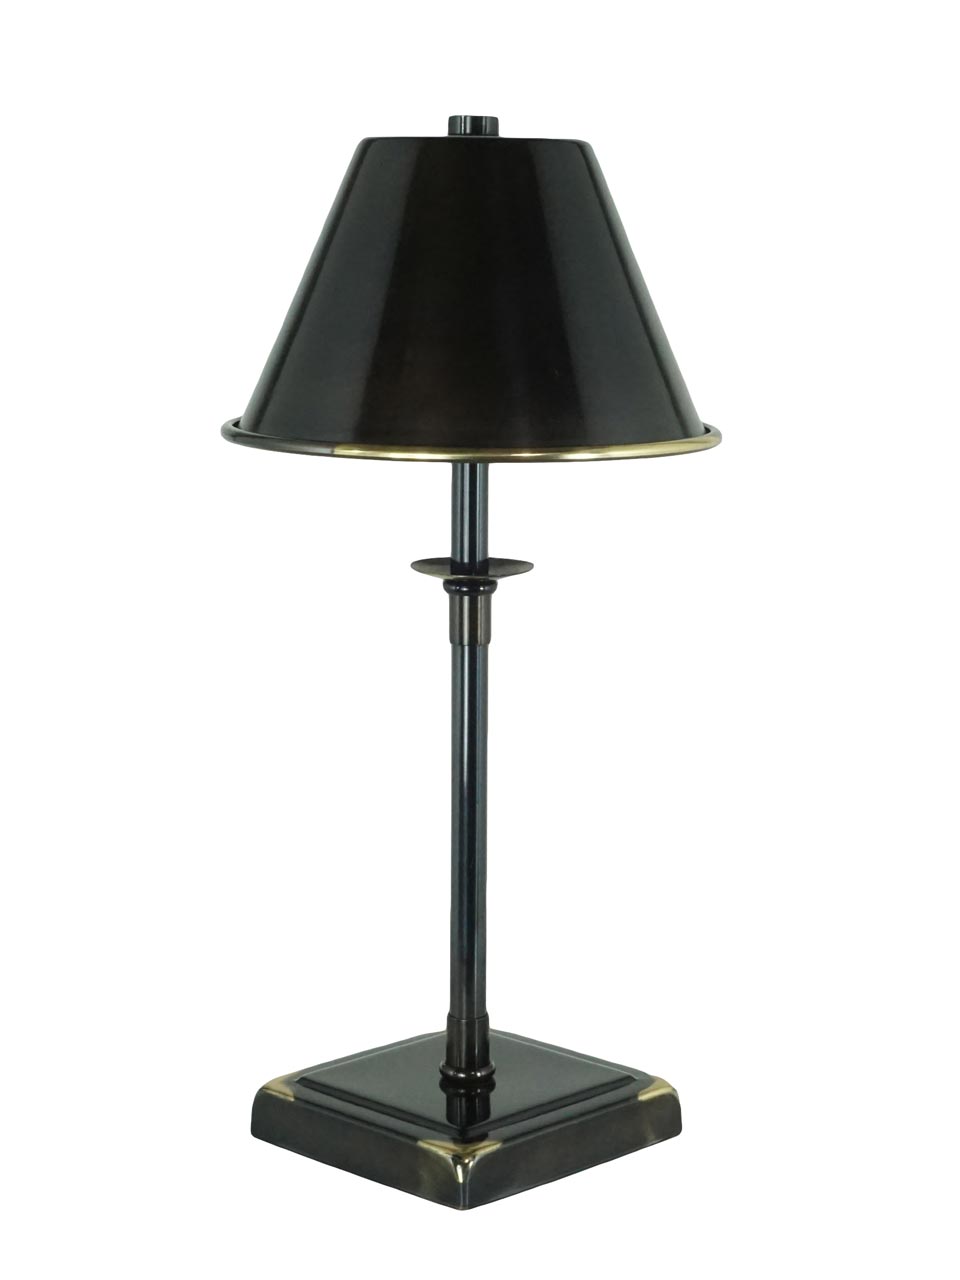 Kumina lampe sans fil en bronze patiné - Réf. 20020401 - mobile